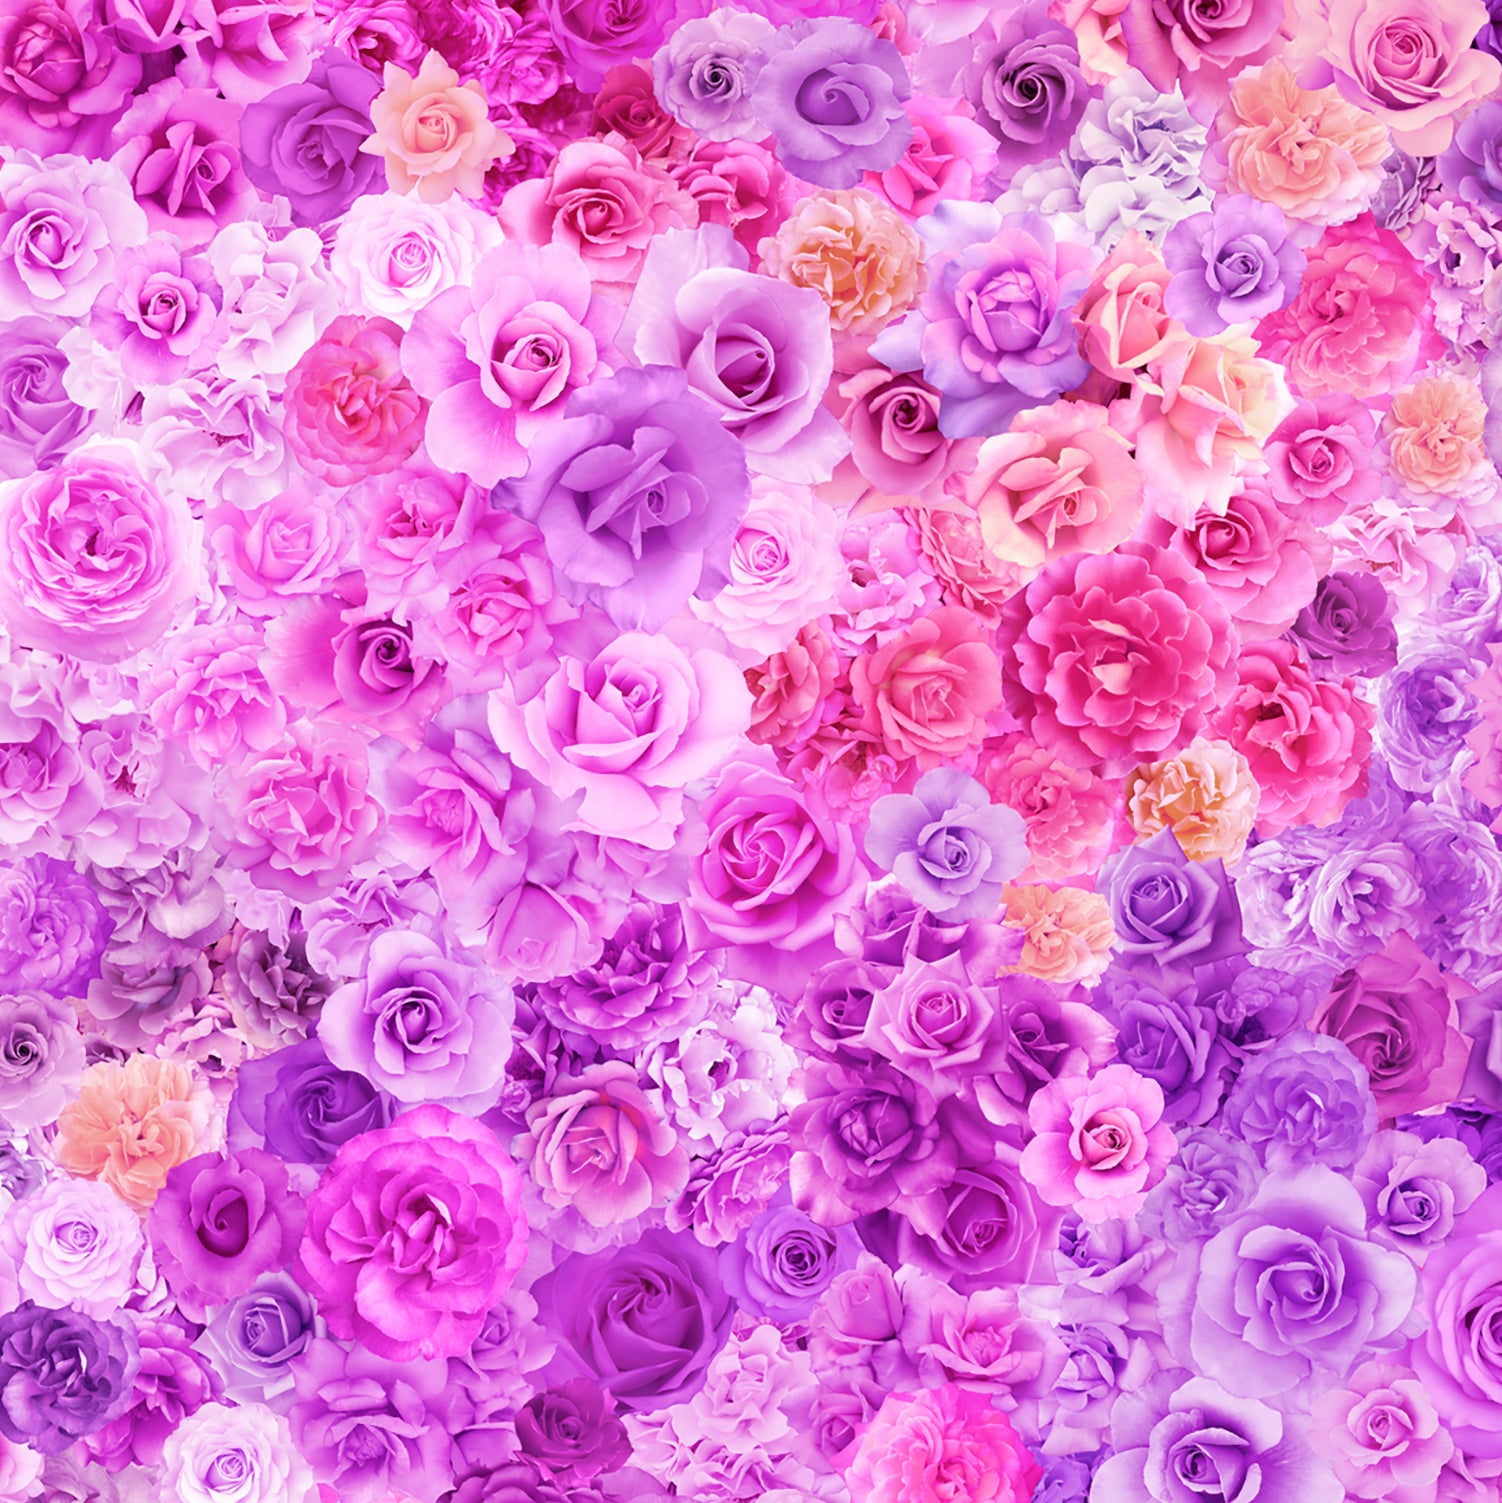 GRADIENTS PARFAIT Rainbow Roses purple passion